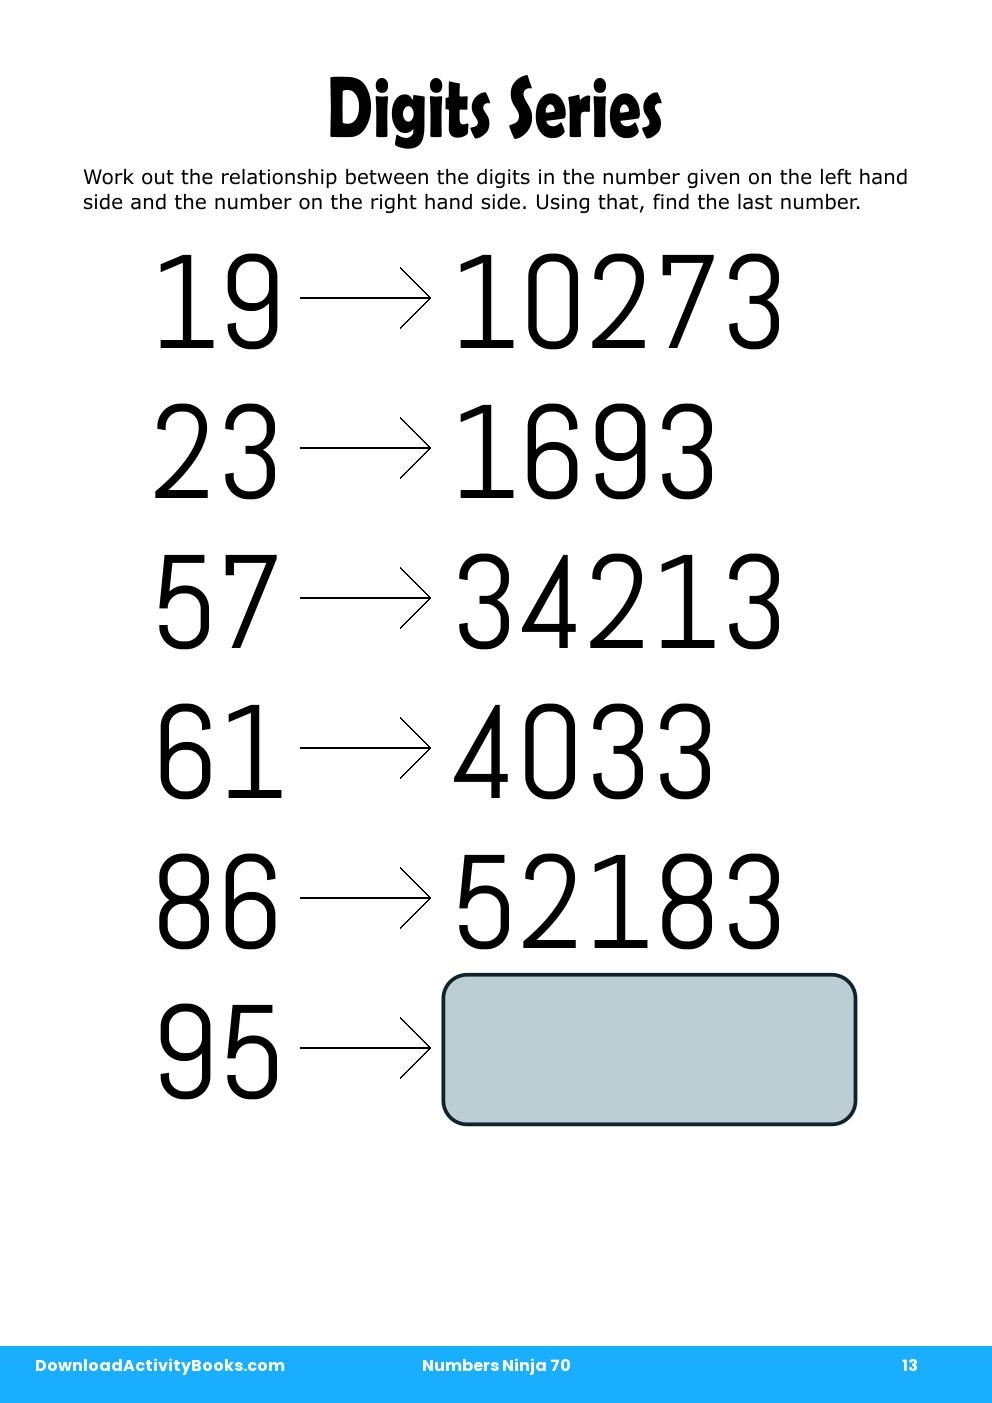 Digits Series in Numbers Ninja 70